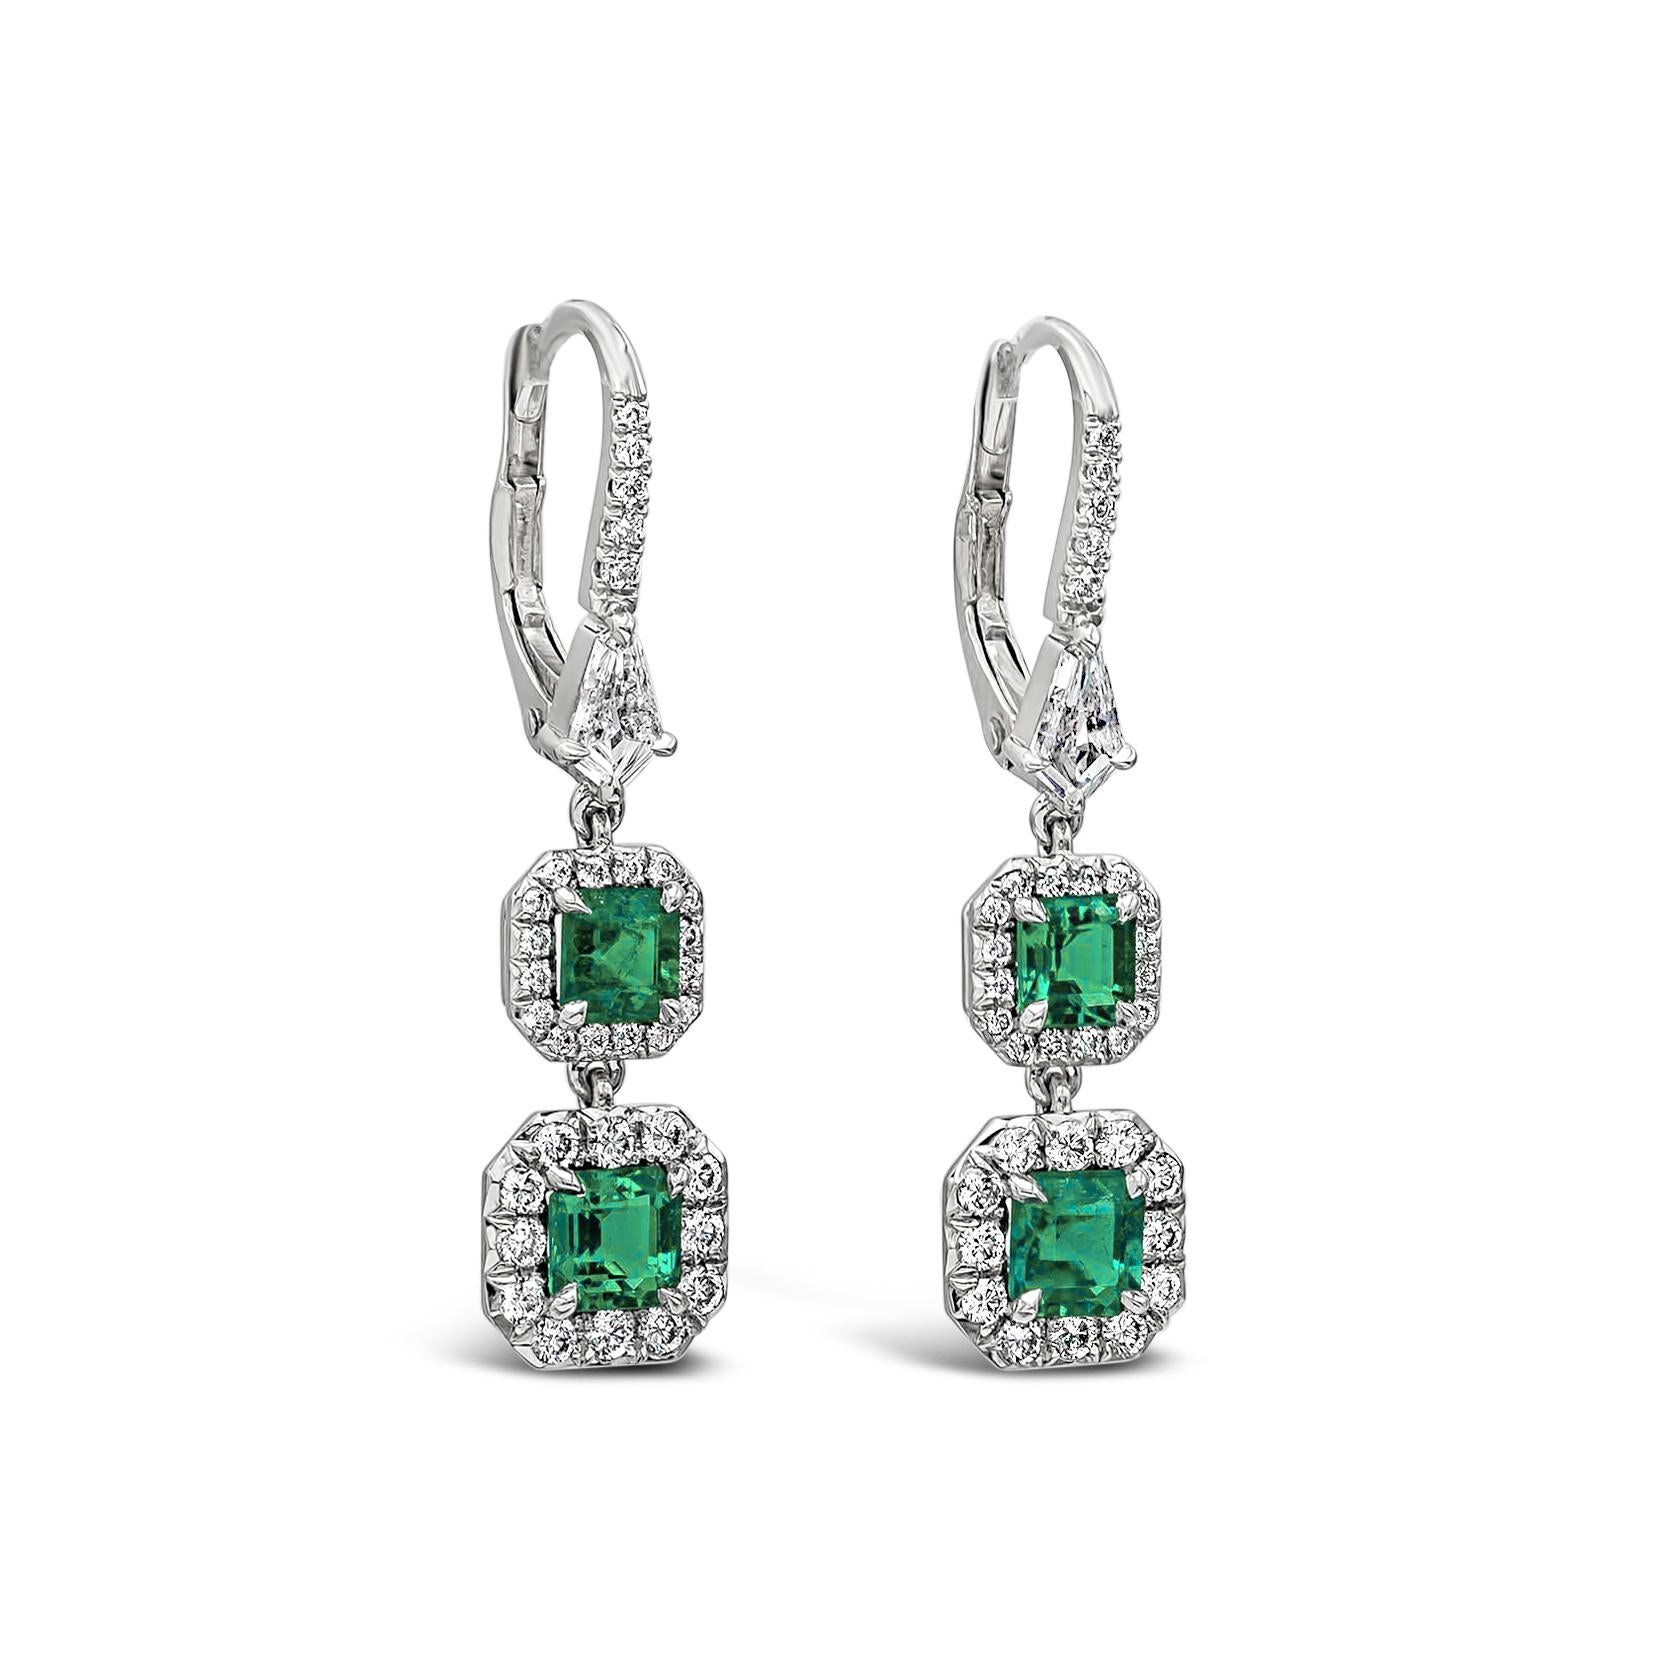 Boucles d'oreilles pendantes spectaculaires, mettant en valeur des émeraudes colombiennes de 1,53 carats au total, entourées d'un halo de diamants ronds brillants et reliées à un anneau de platine incrusté de diamants. Les diamants d'accentuation